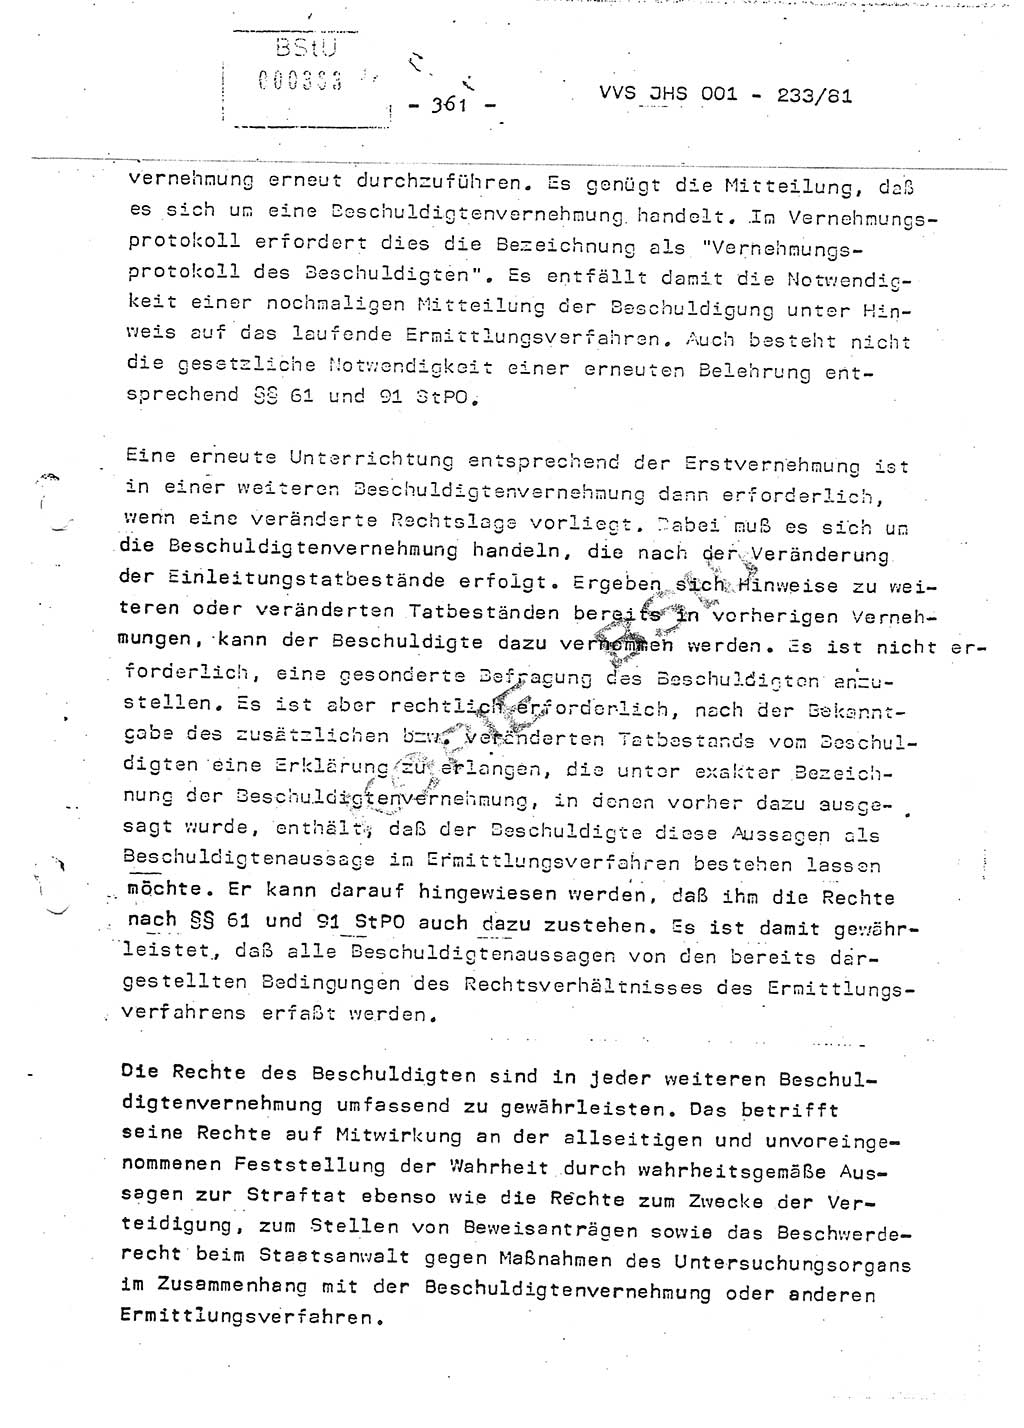 Dissertation Oberstleutnant Horst Zank (JHS), Oberstleutnant Dr. Karl-Heinz Knoblauch (JHS), Oberstleutnant Gustav-Adolf Kowalewski (HA Ⅸ), Oberstleutnant Wolfgang Plötner (HA Ⅸ), Ministerium für Staatssicherheit (MfS) [Deutsche Demokratische Republik (DDR)], Juristische Hochschule (JHS), Vertrauliche Verschlußsache (VVS) o001-233/81, Potsdam 1981, Blatt 361 (Diss. MfS DDR JHS VVS o001-233/81 1981, Bl. 361)